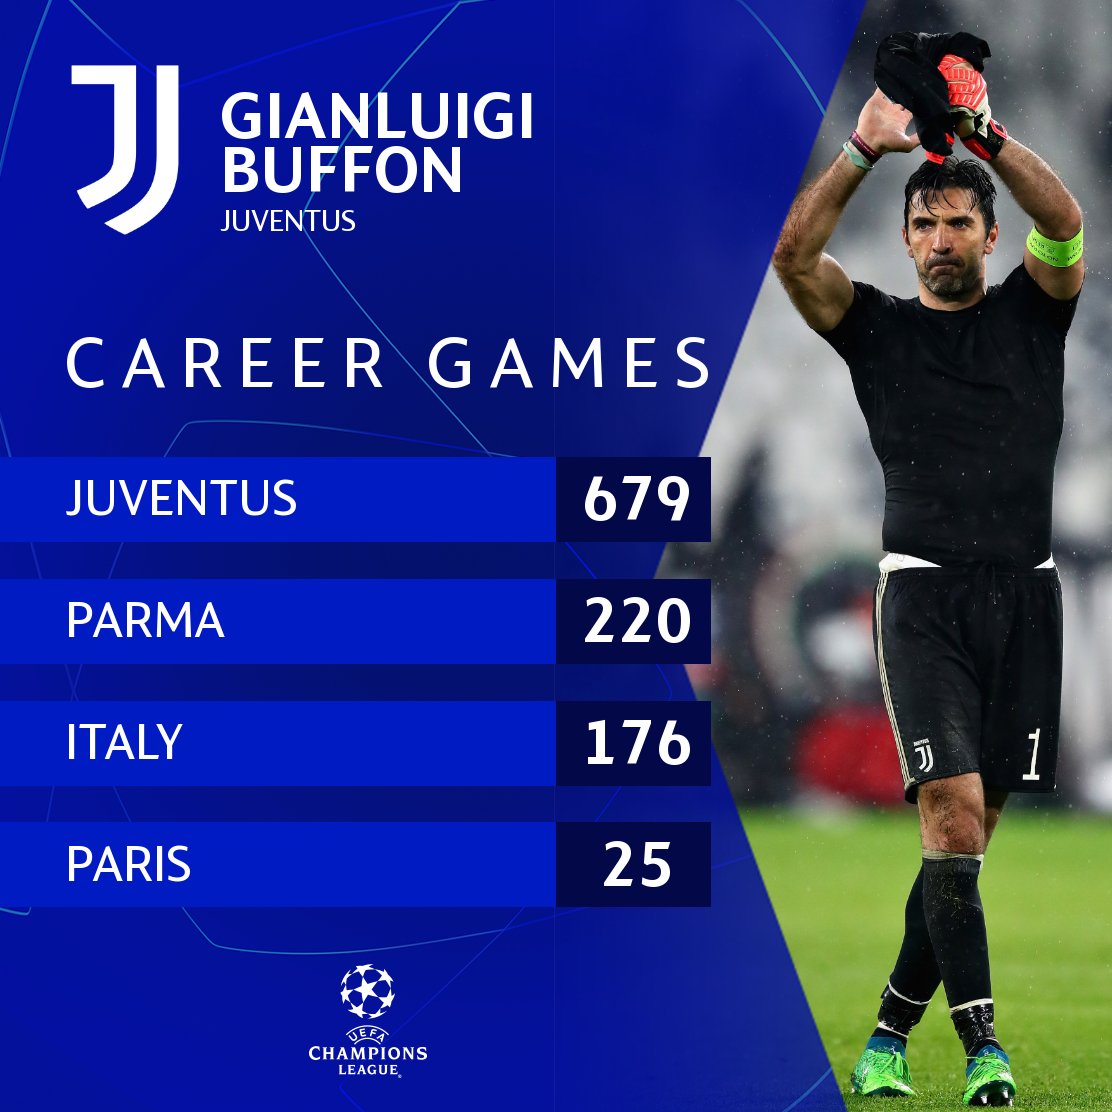 Gianluigi Buffon - Career stats